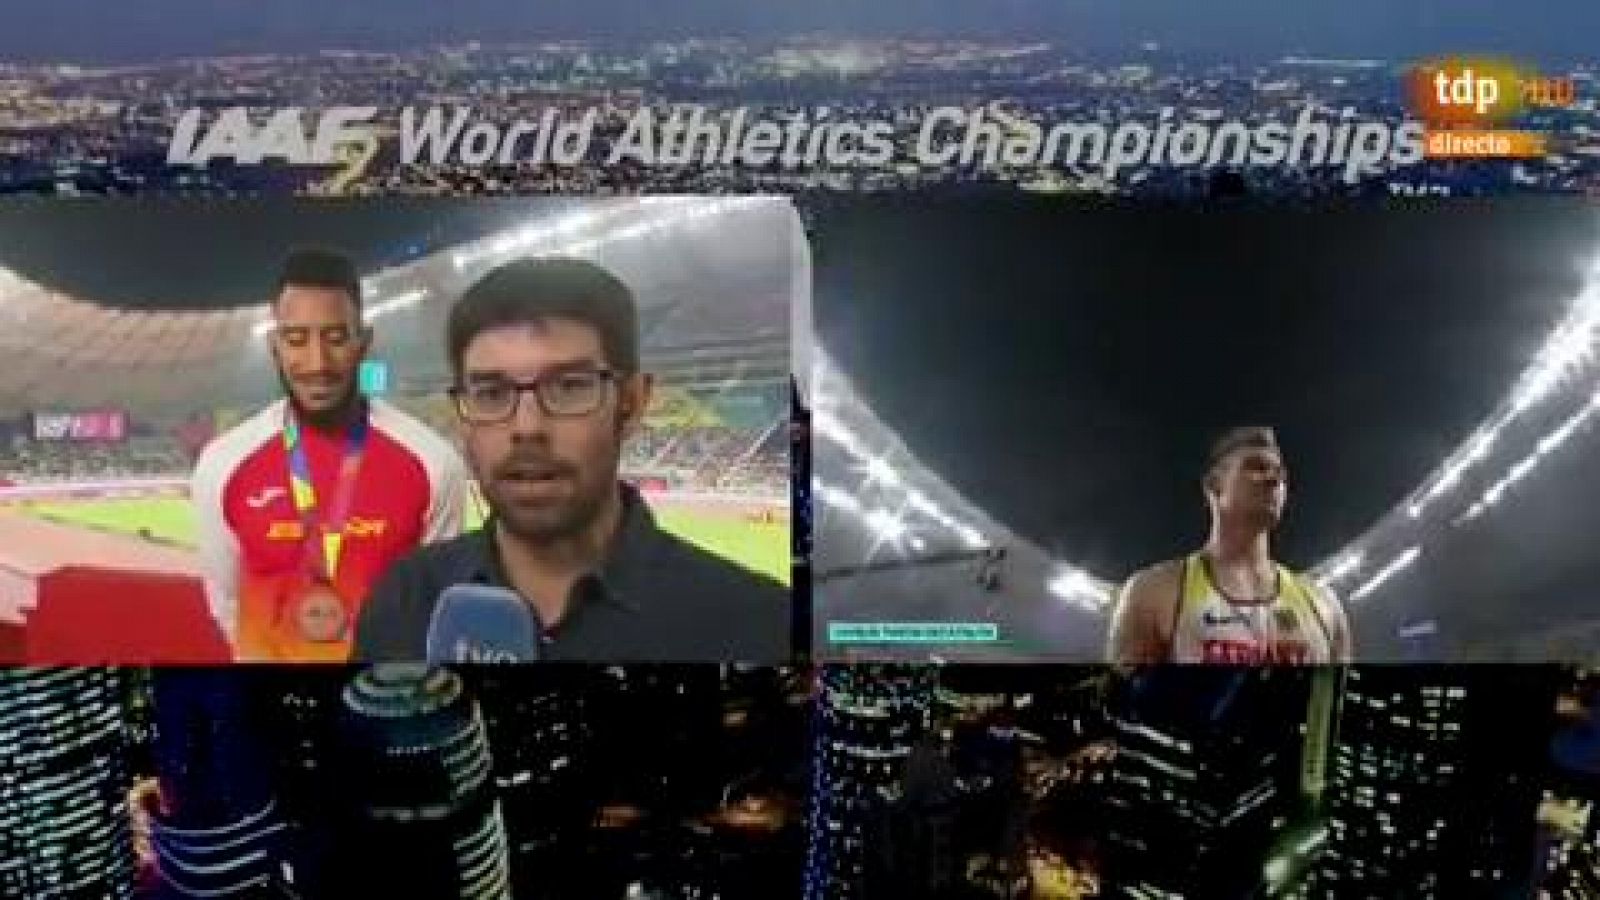 Mundial de atletismo | Orlando Ortega: "Gracias por todos los mensajes de apoyo"